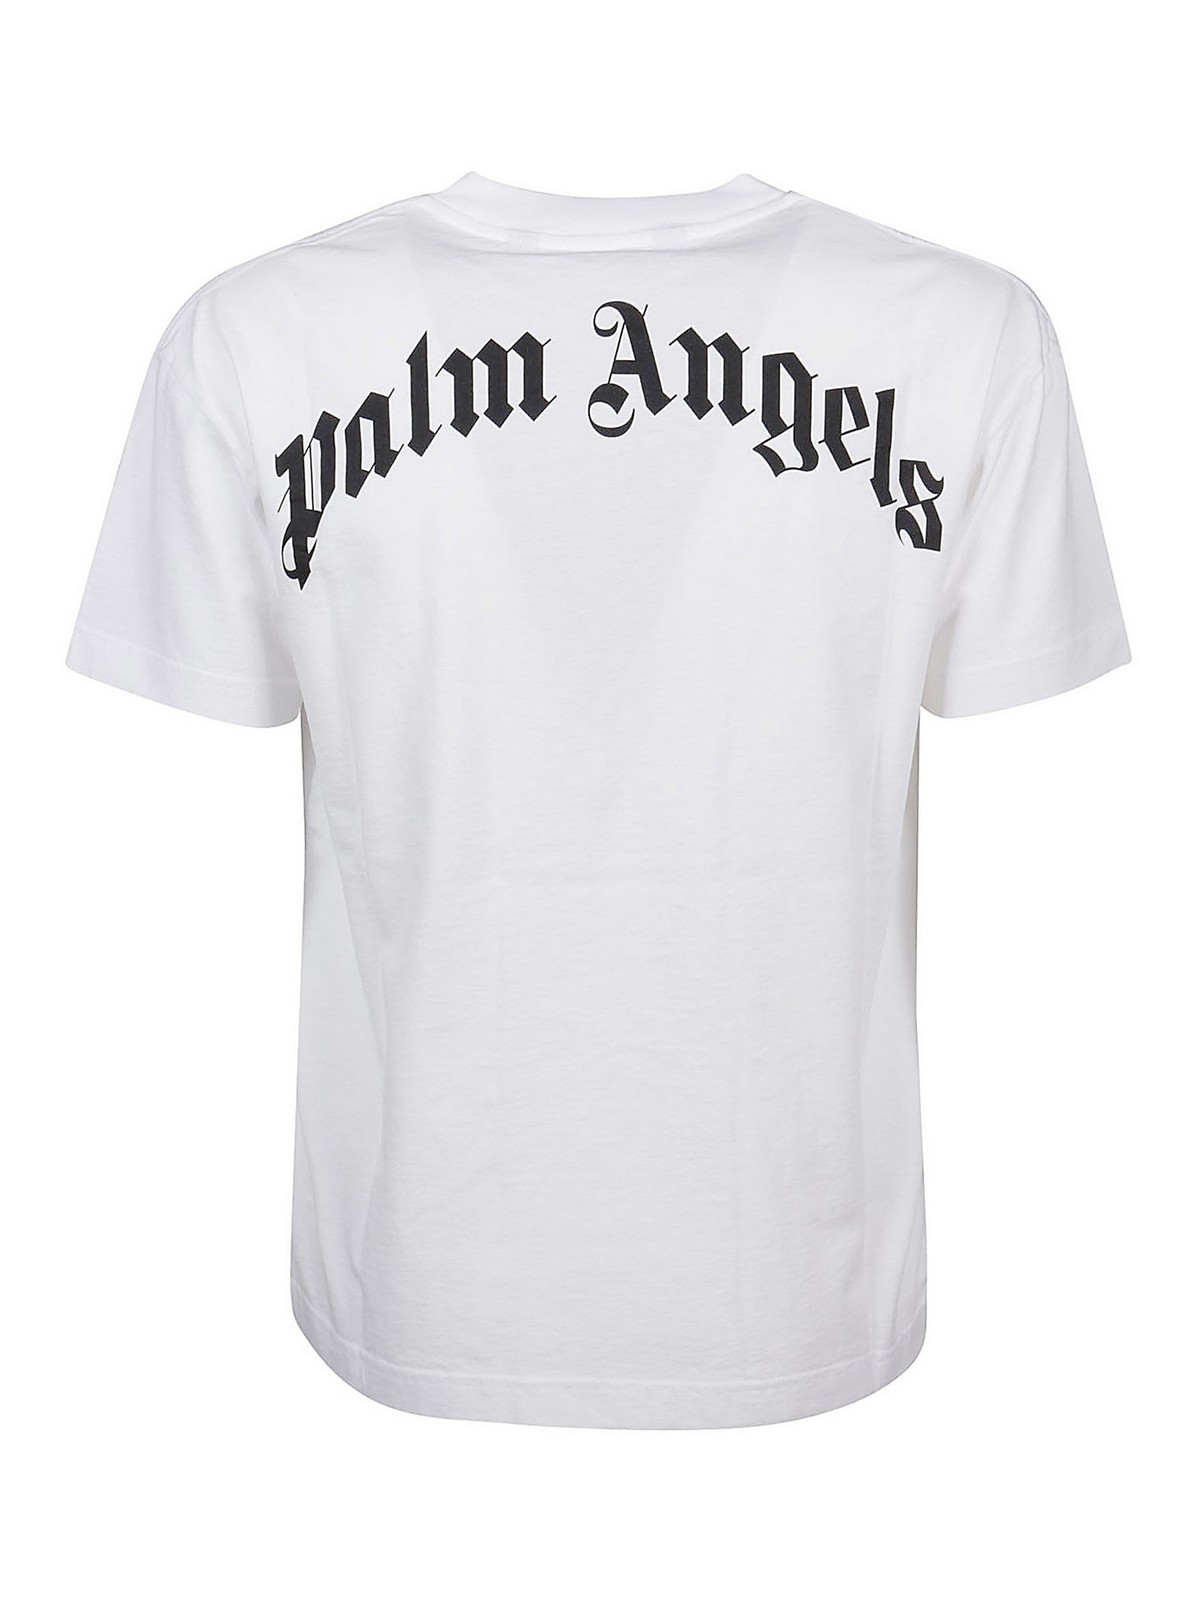 palm angels t shirt